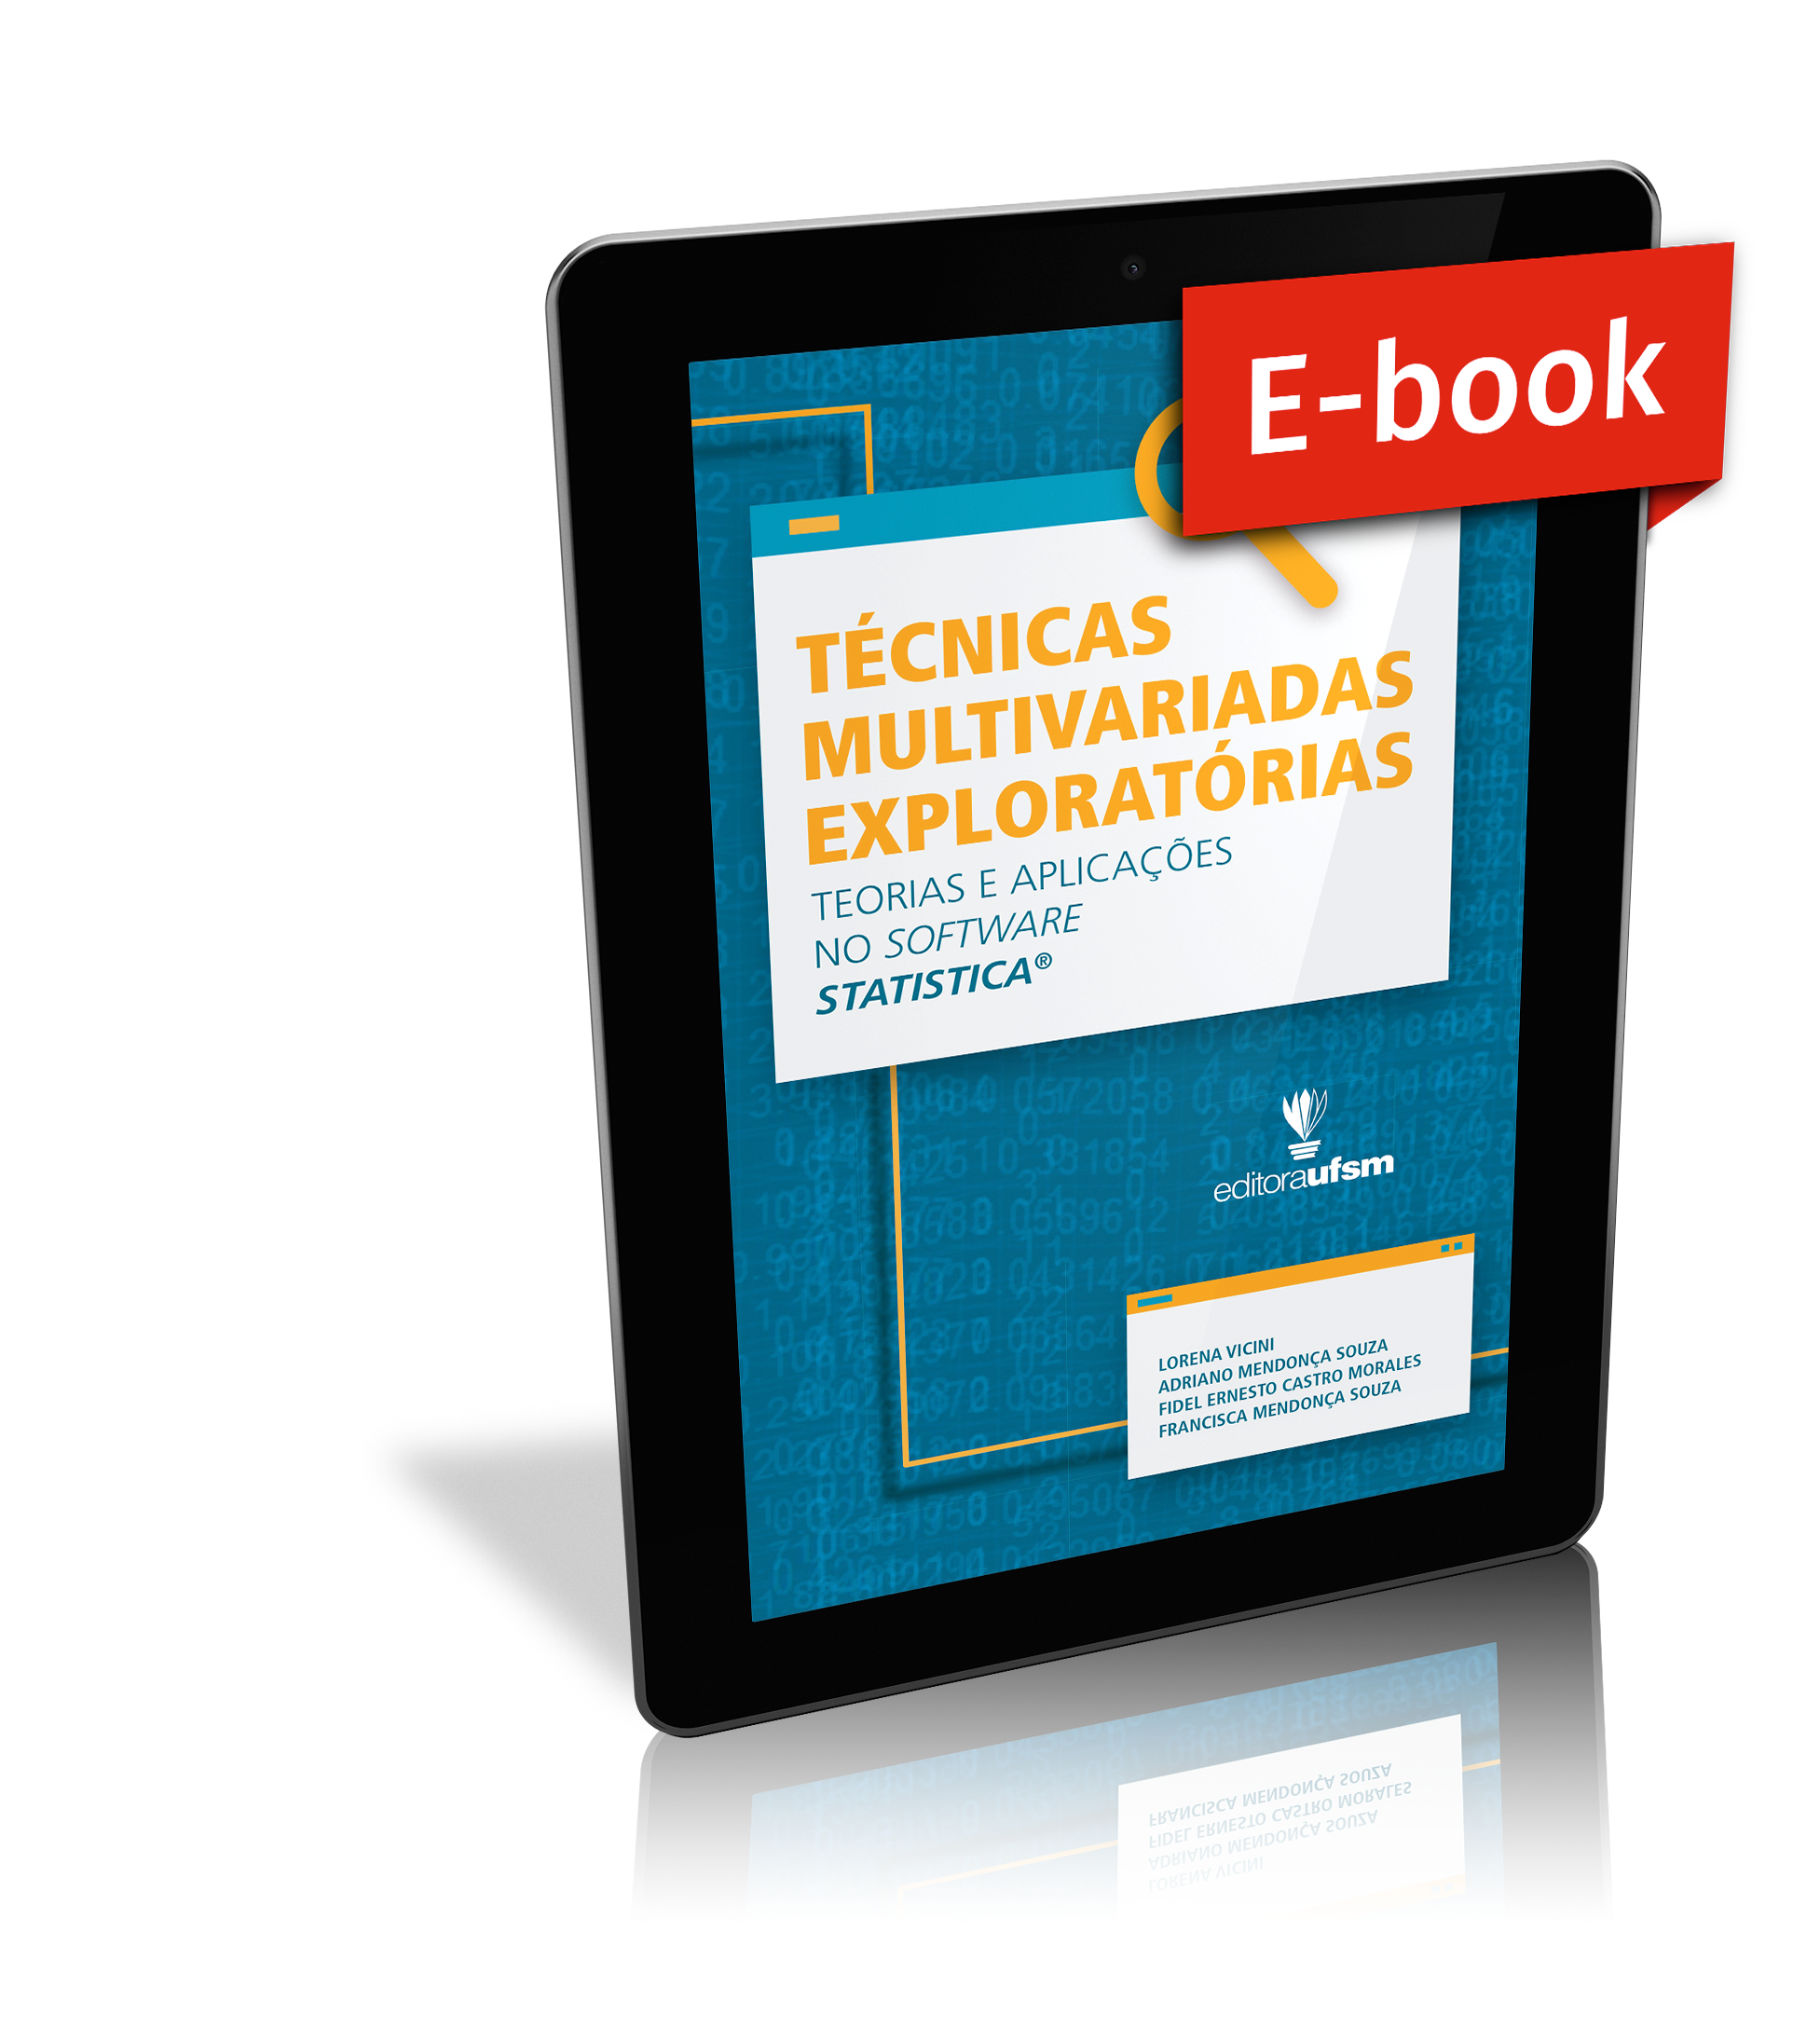 Capa do ebook Técnicas Multivariadas Exploratórias: Teorias e Aplicações no Software Statistica